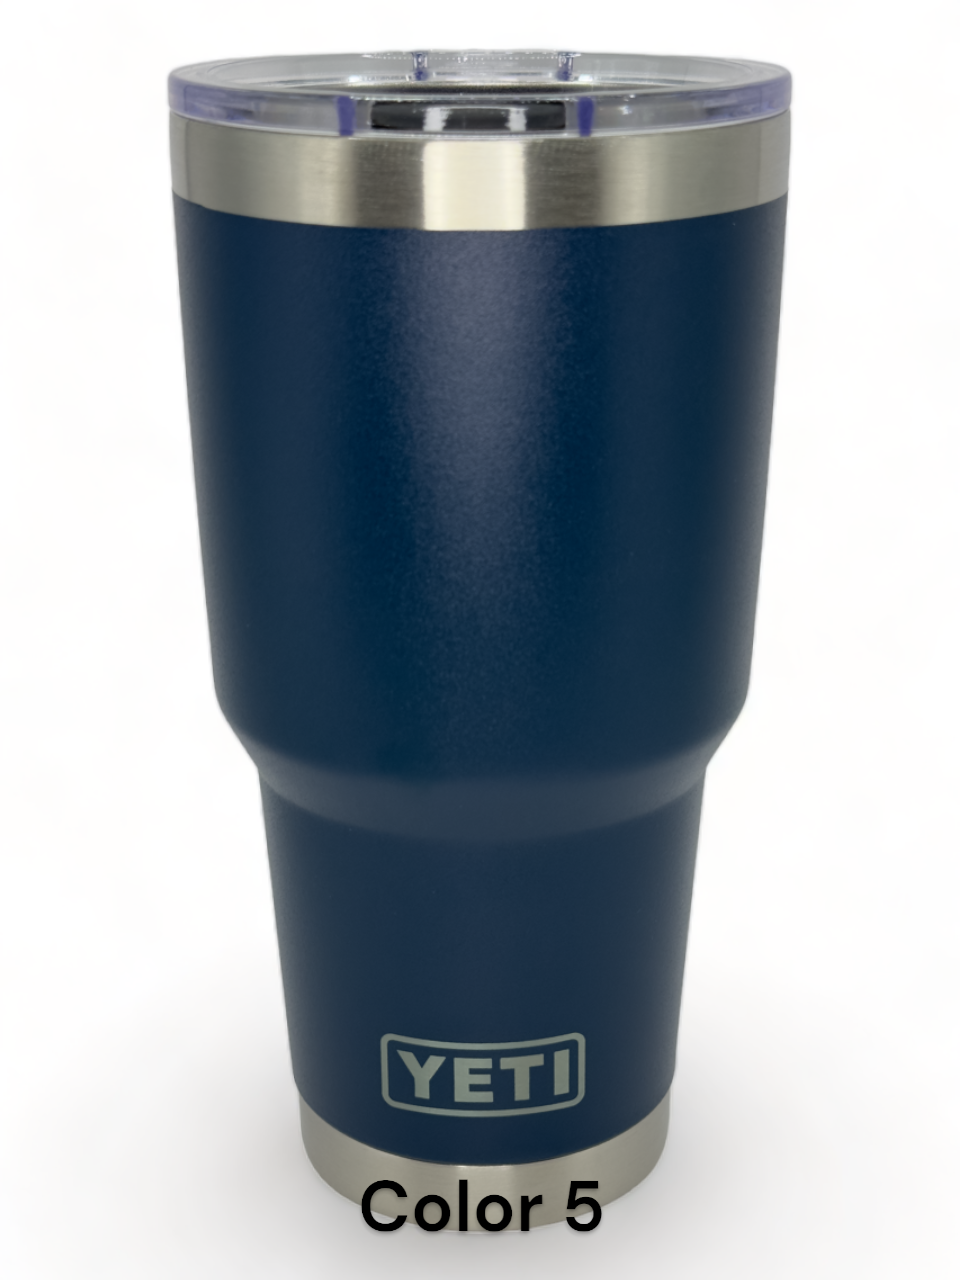 Plattsmouth Blue Devils - Logo only - Yeti Style